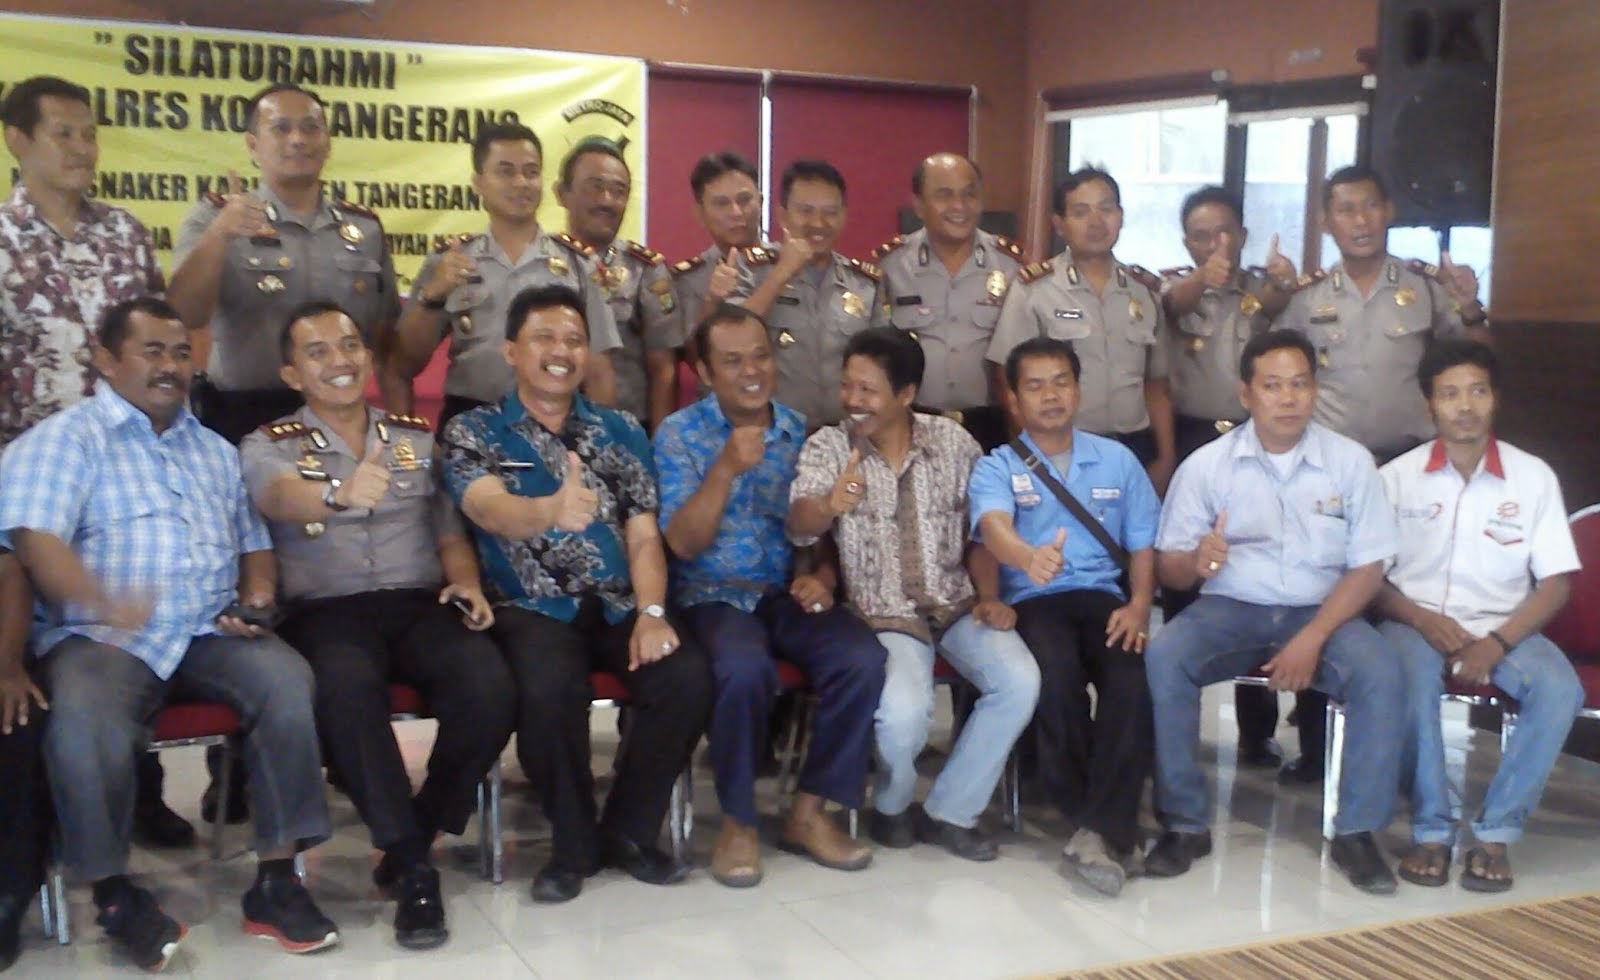 Silaturahmi polresta & kadisnaker kabupaten tangerang 